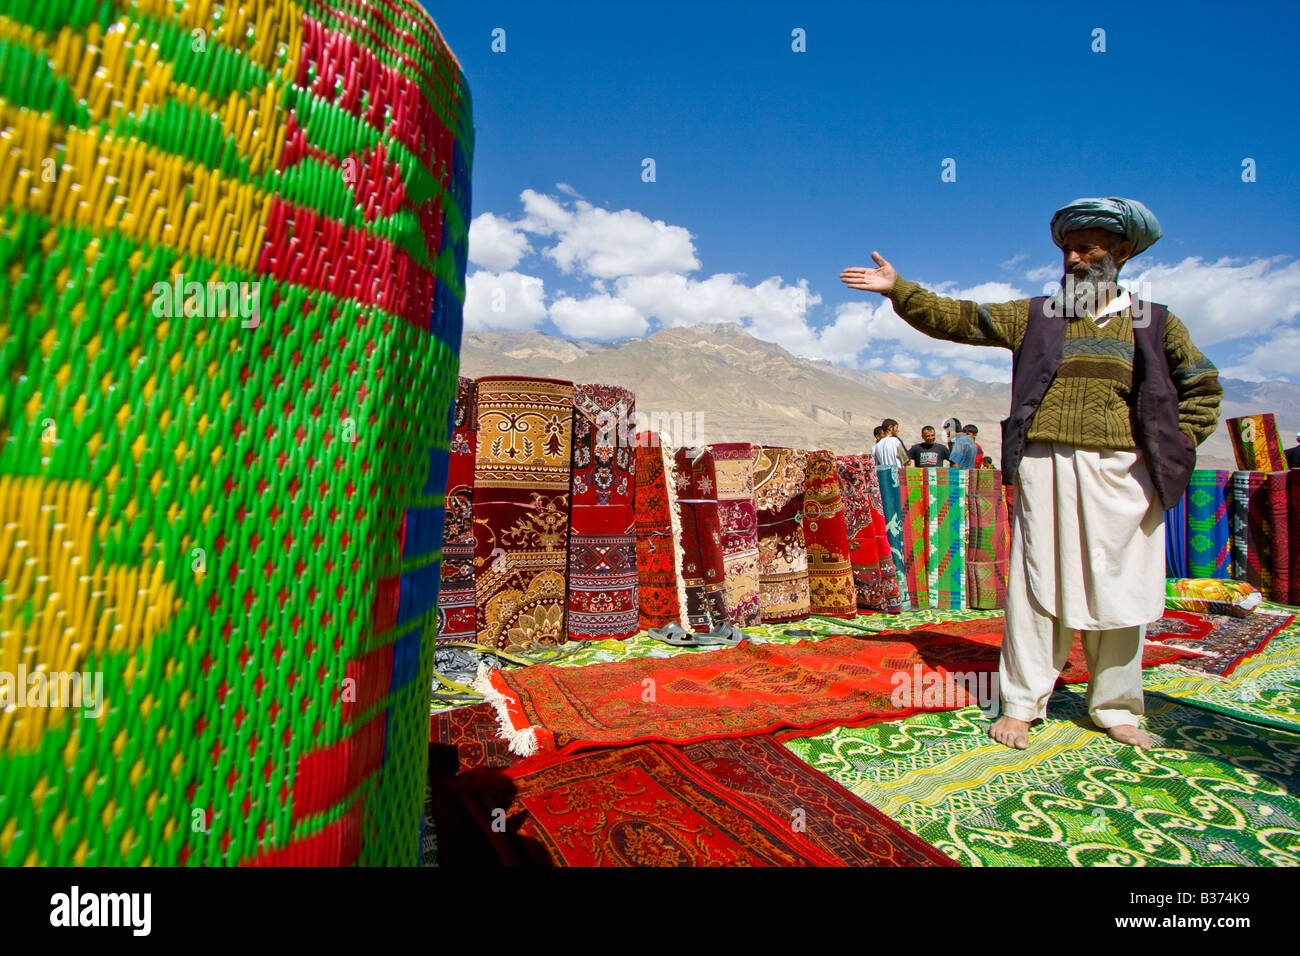 L'homme afghane vendant des tapis et carpettes au marché transfrontalier entre le Tadjikistan et l'Afghanistan Ishkashim Banque D'Images